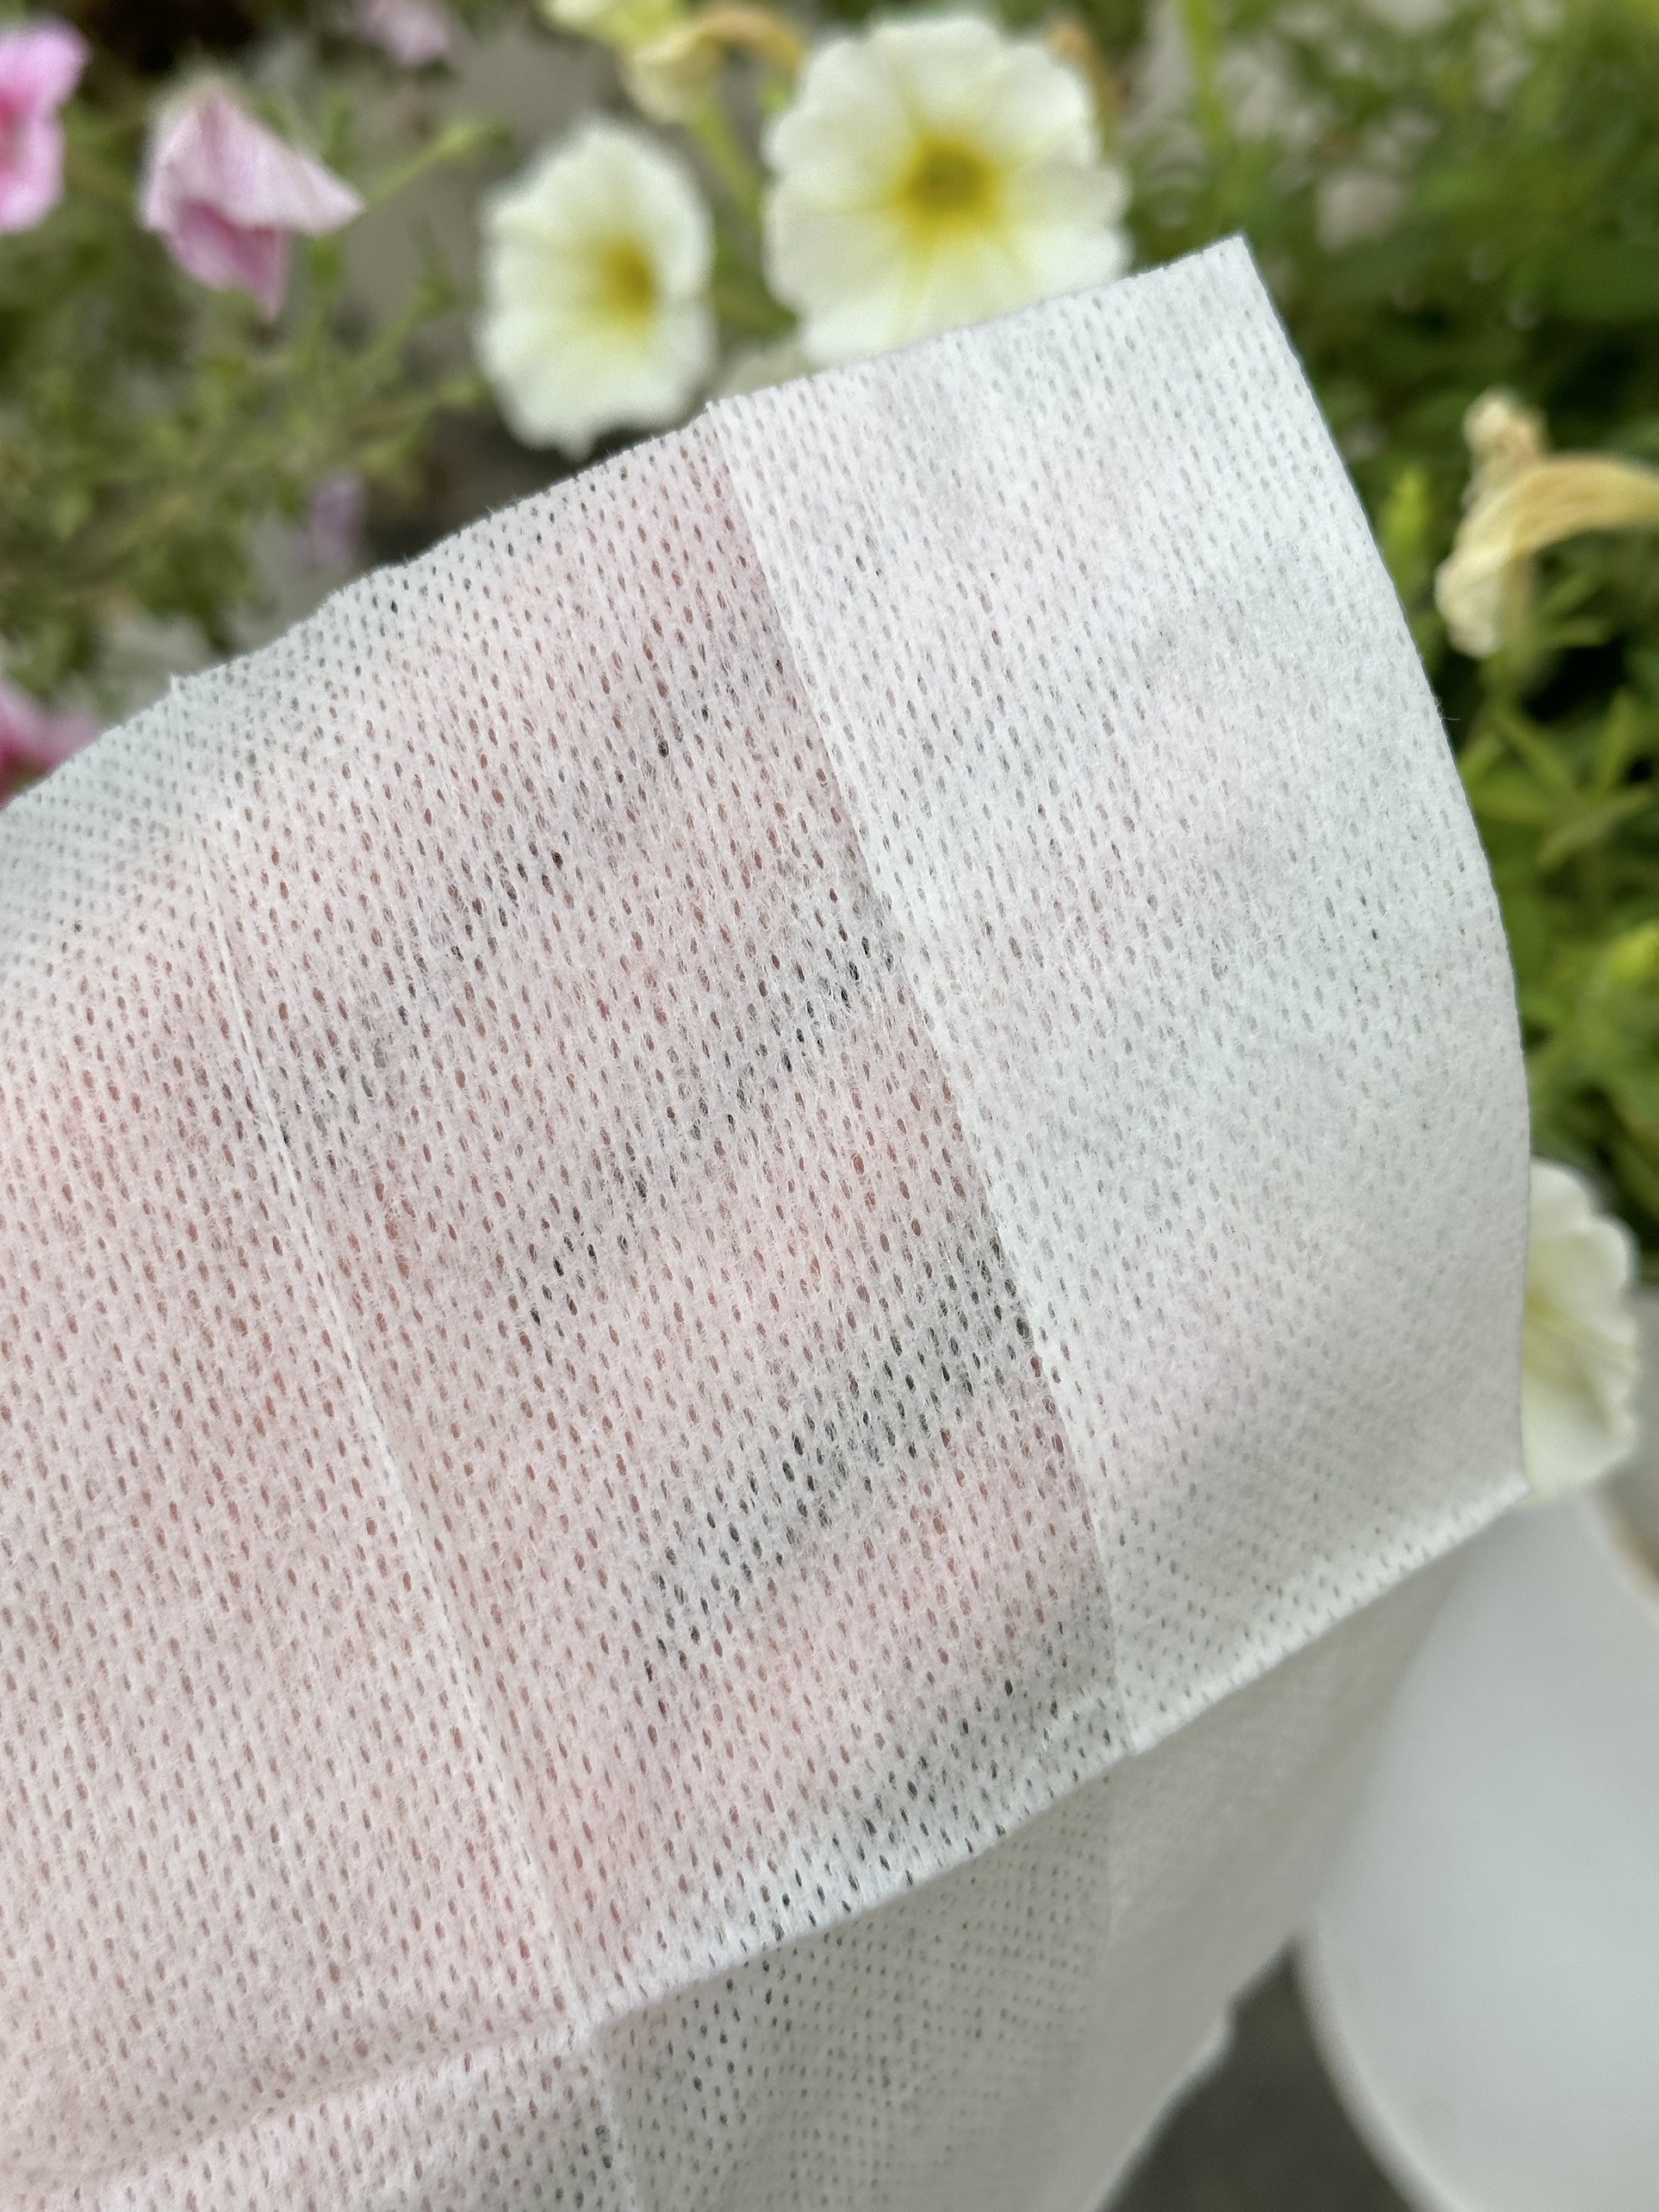 Gói 20 khăn giấy ướt dưỡng ẩm hương hoa hồng Kyowa